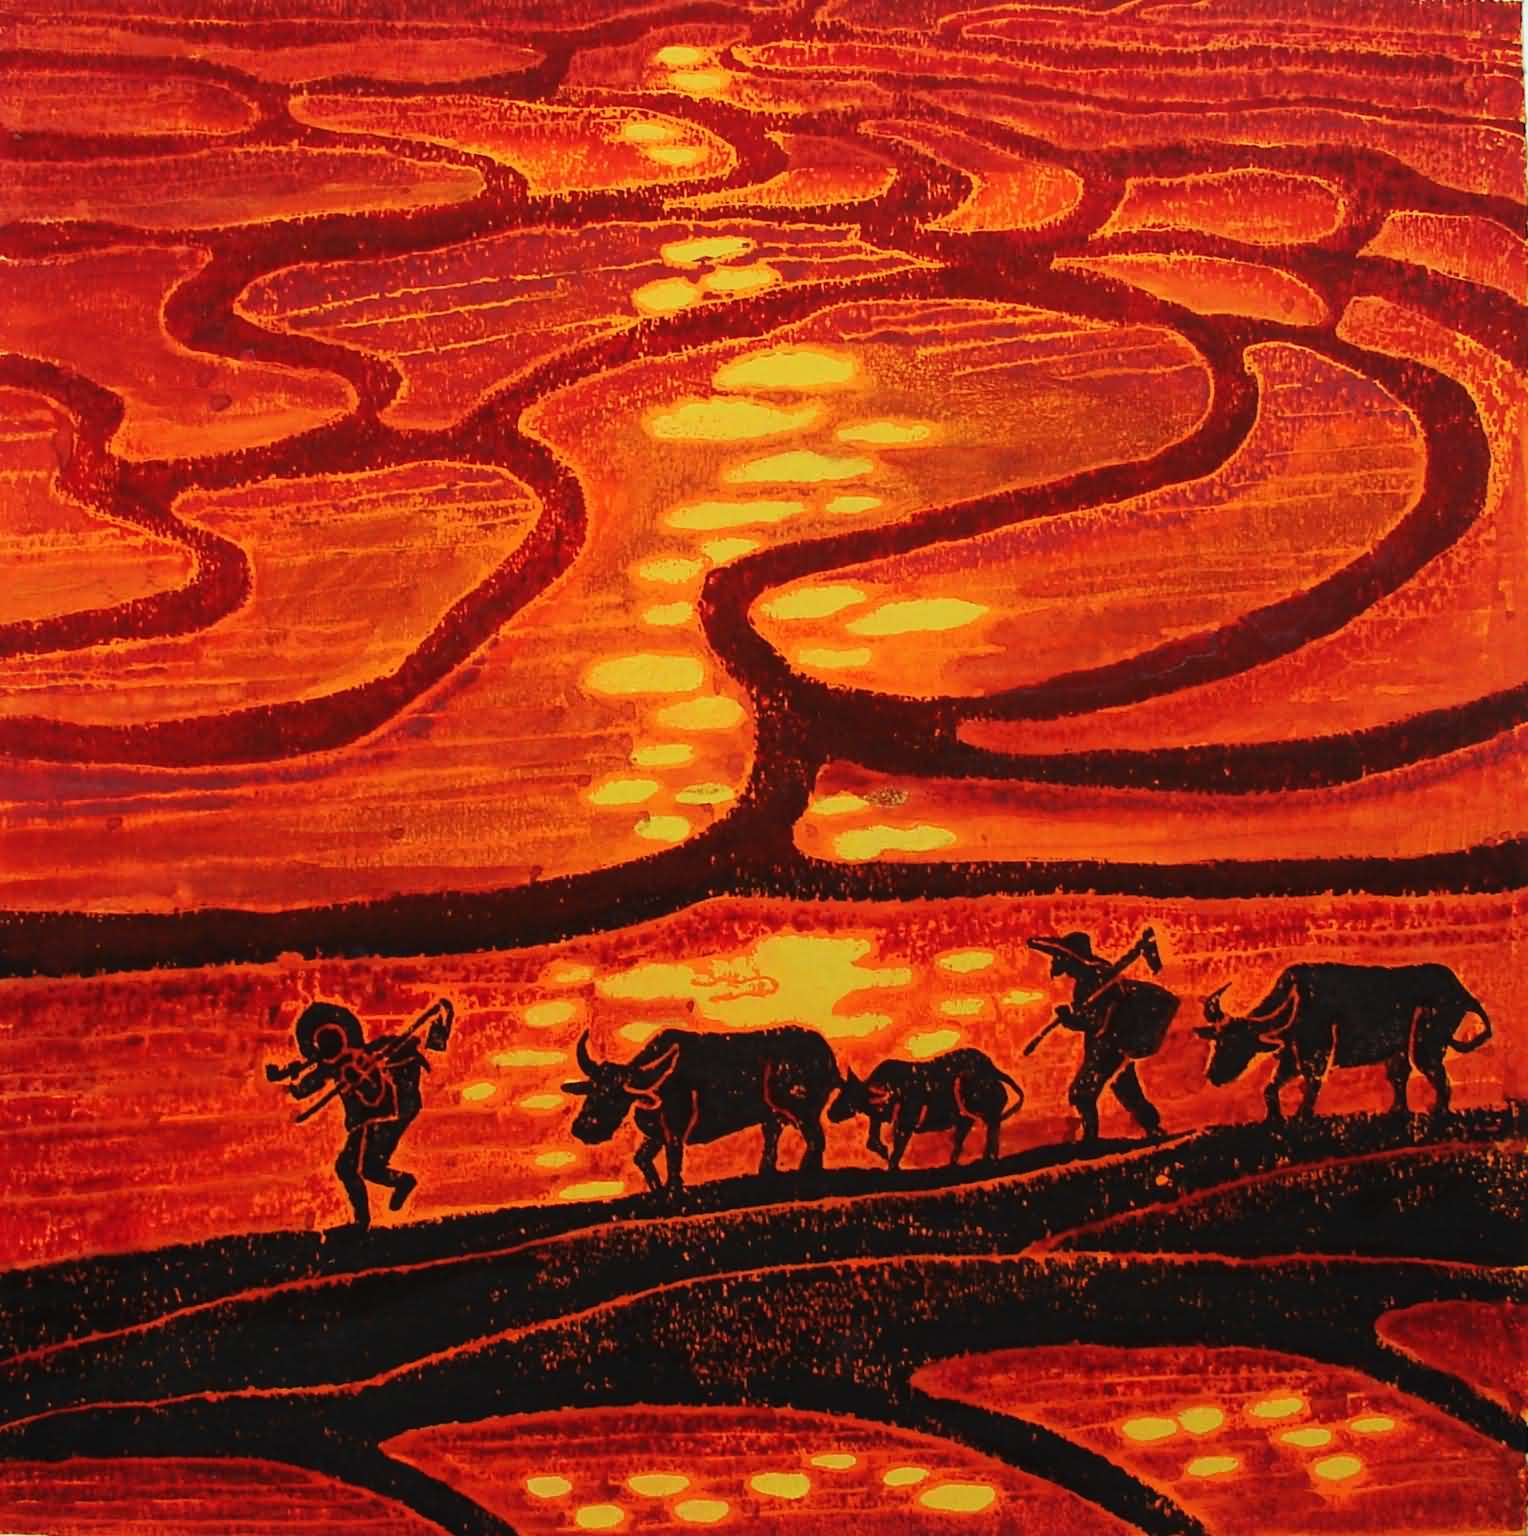 【一线采风】一幅农民画 绘就未来乡村共富图景_荔枝网新闻